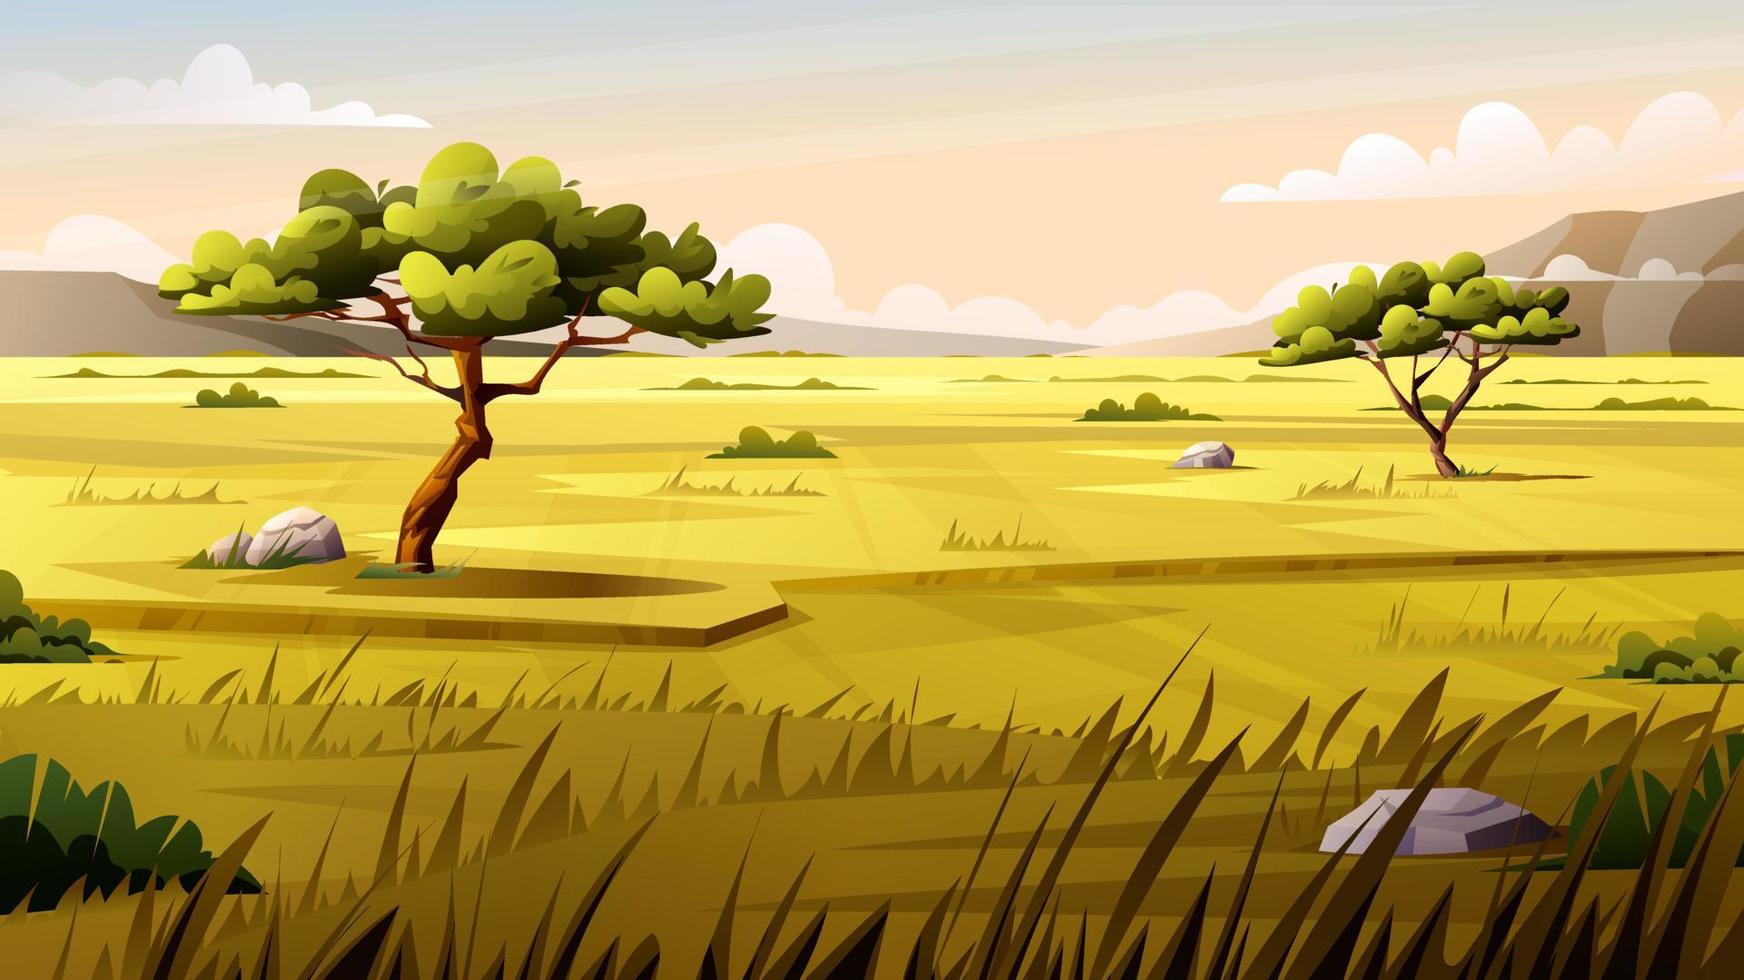 Landschaft der Savanne im Cartoon-Stil vektor